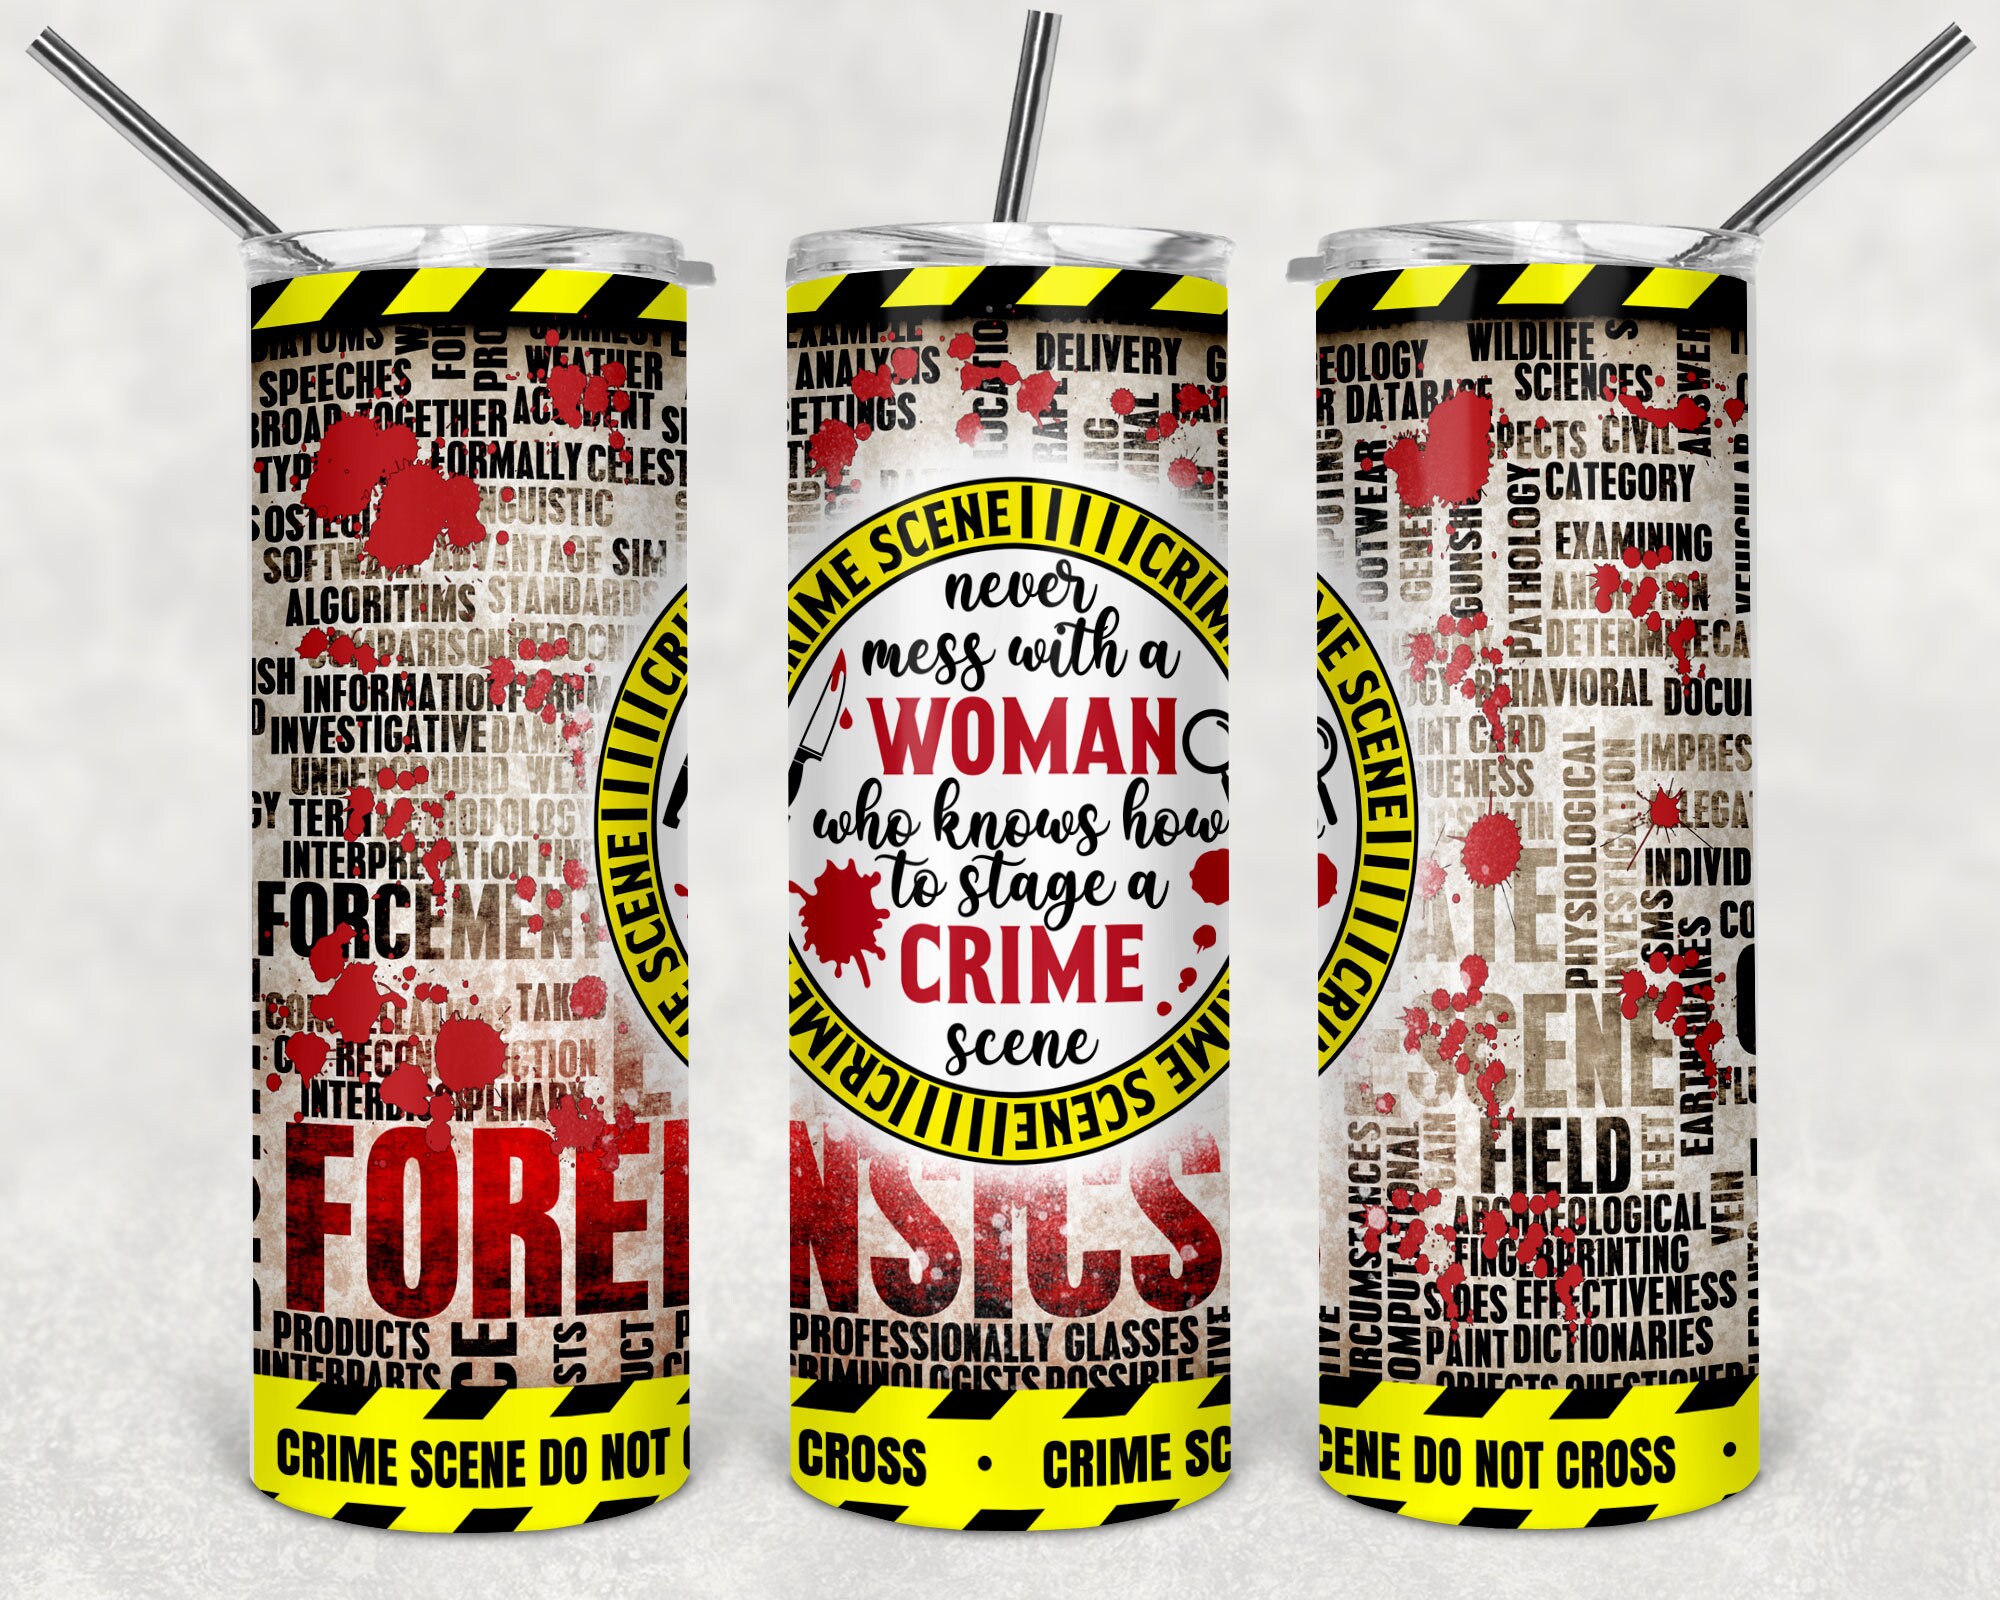 True Crime Tumbler , women, 20 oz sublimation tumbler – Kori Beth